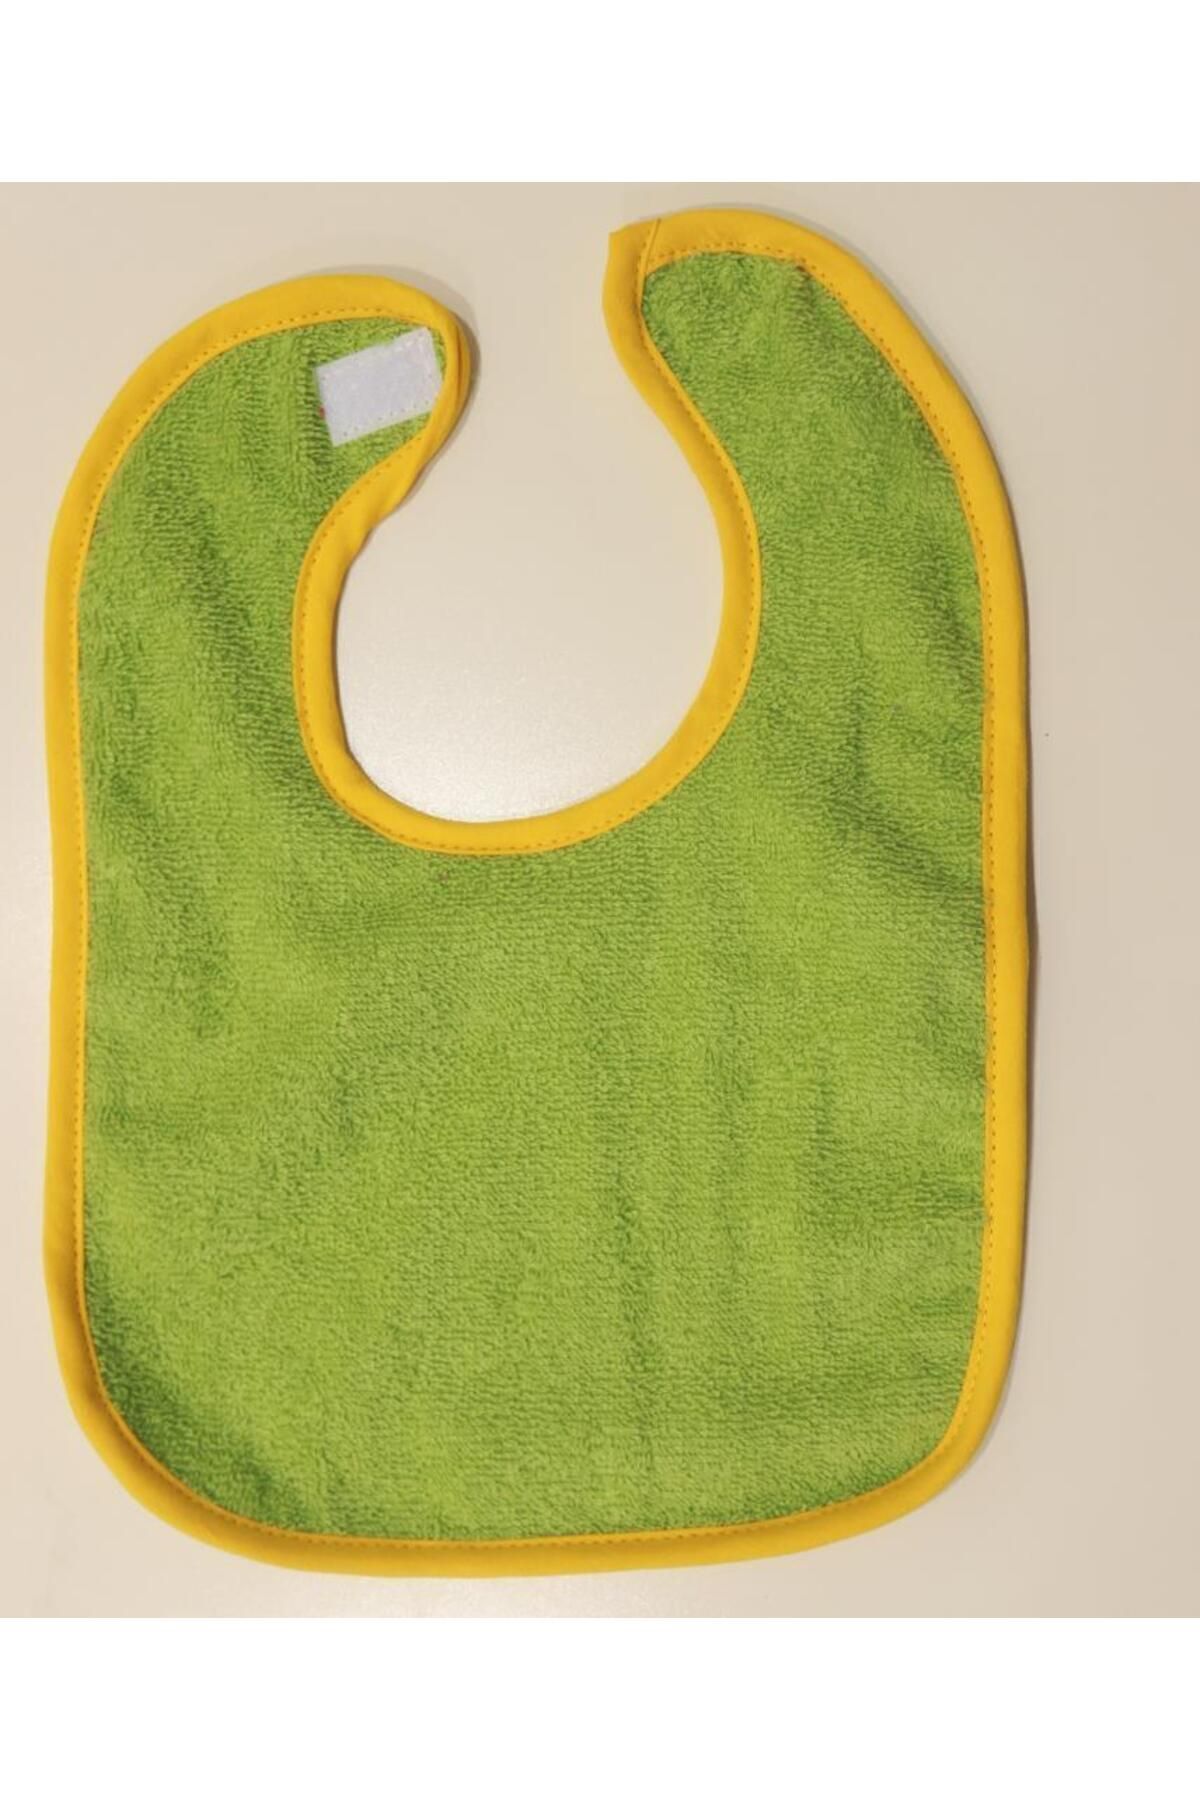 Ender Home Havlu Bebek Mama Önlüğü Sıvı Su Geçirmez Cırt Bantlı Mama Önlüğü